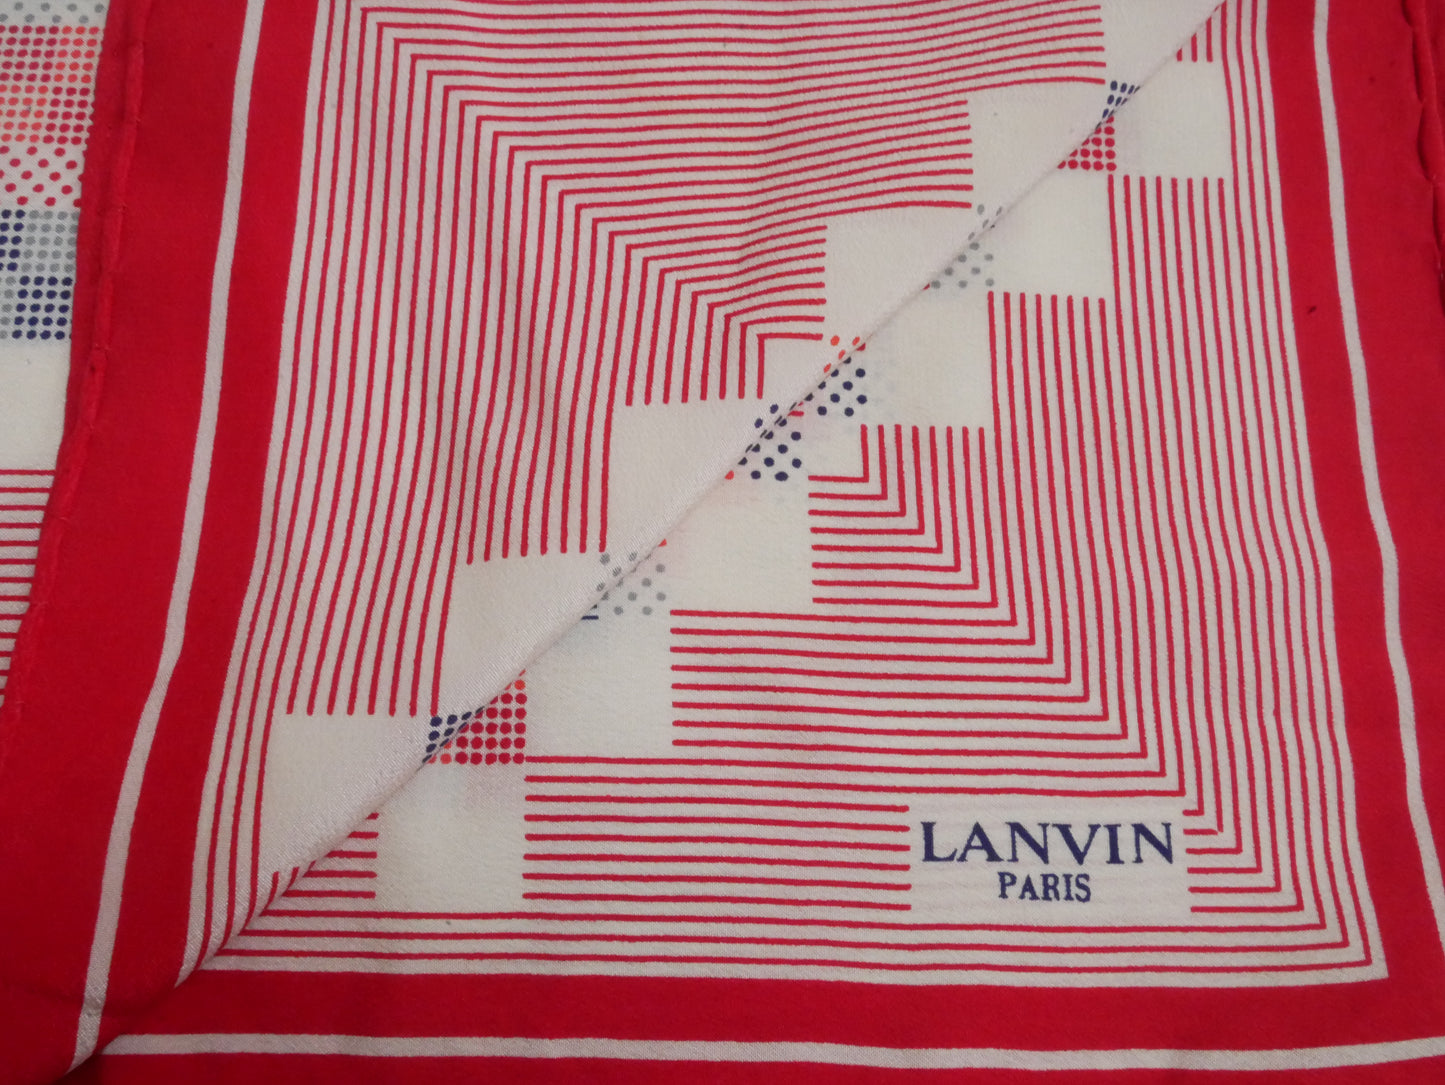 LANVIN Scarves vintage Lysis Paris pre-owned secondhand